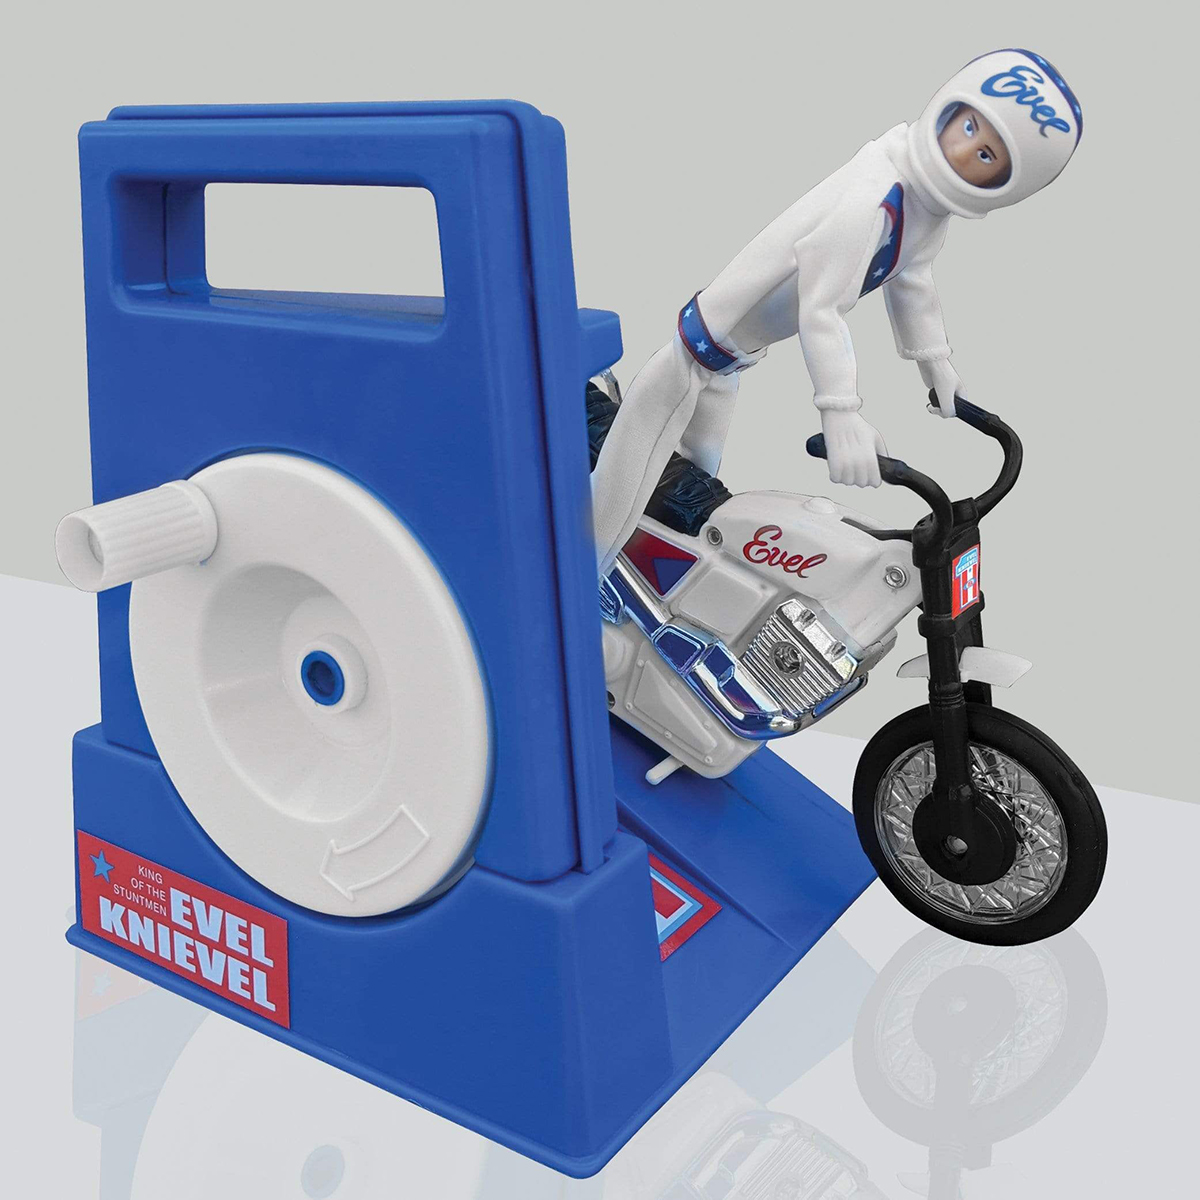 El juguete de Evel Knievel con su moto de acrobacias ya puede ser tuyo por 39,95 dólares (más gastos de envío)